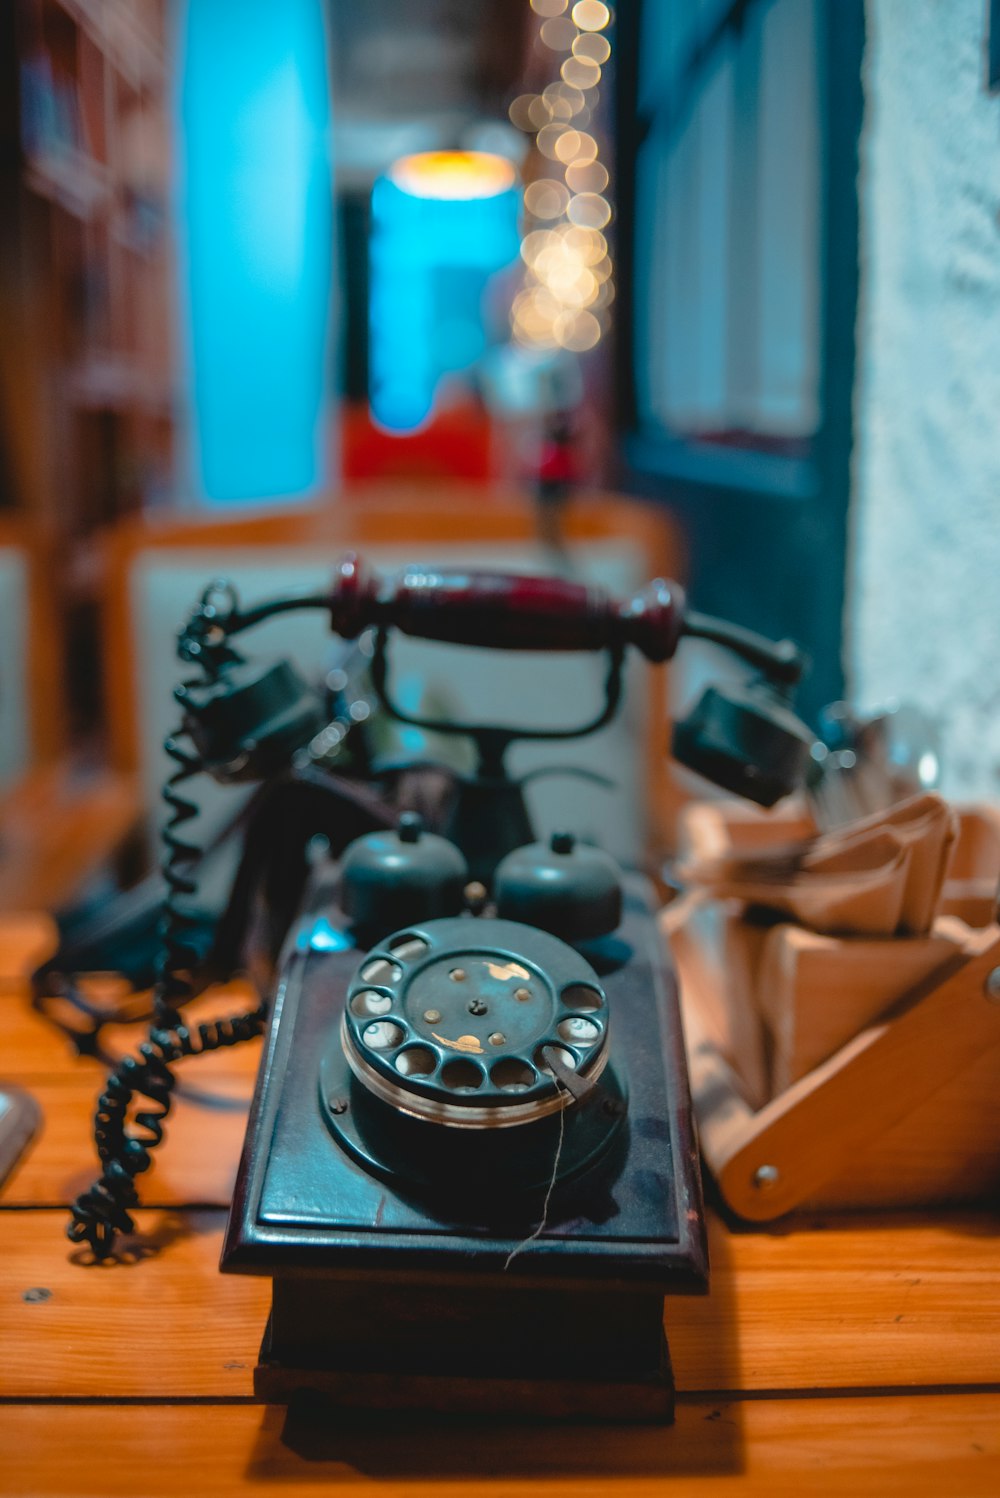 茶色の木製のテーブルに黒い回転式電話